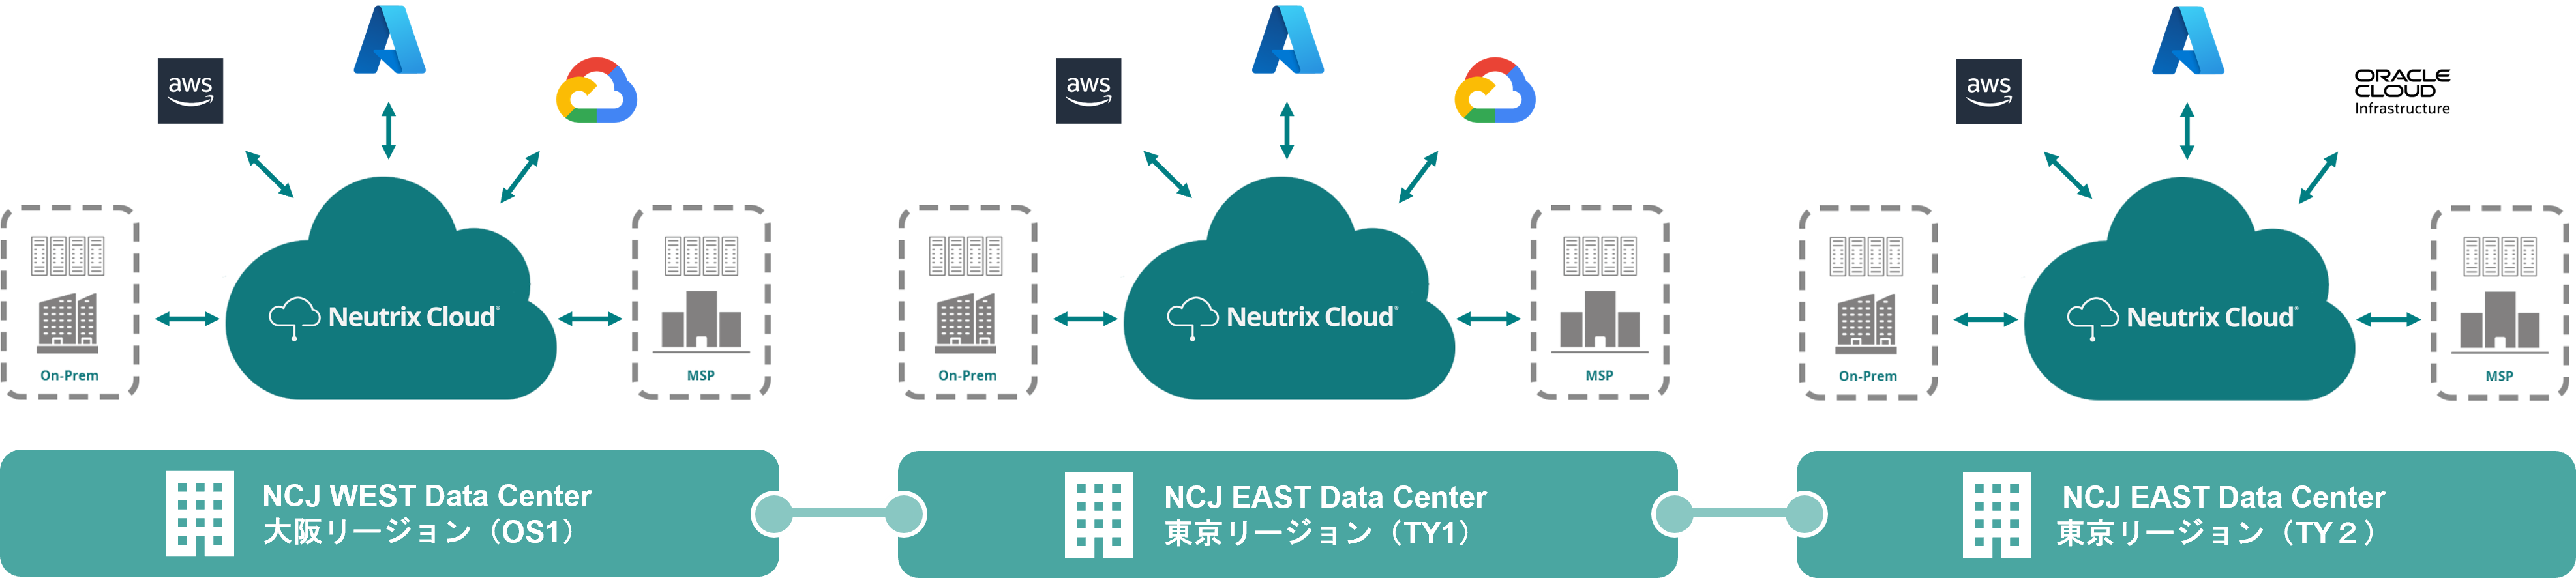 Neutrix Cloud Japan、TY2において新たにAWS、OCIと 接続可能なマルチクラウドサービスを提供